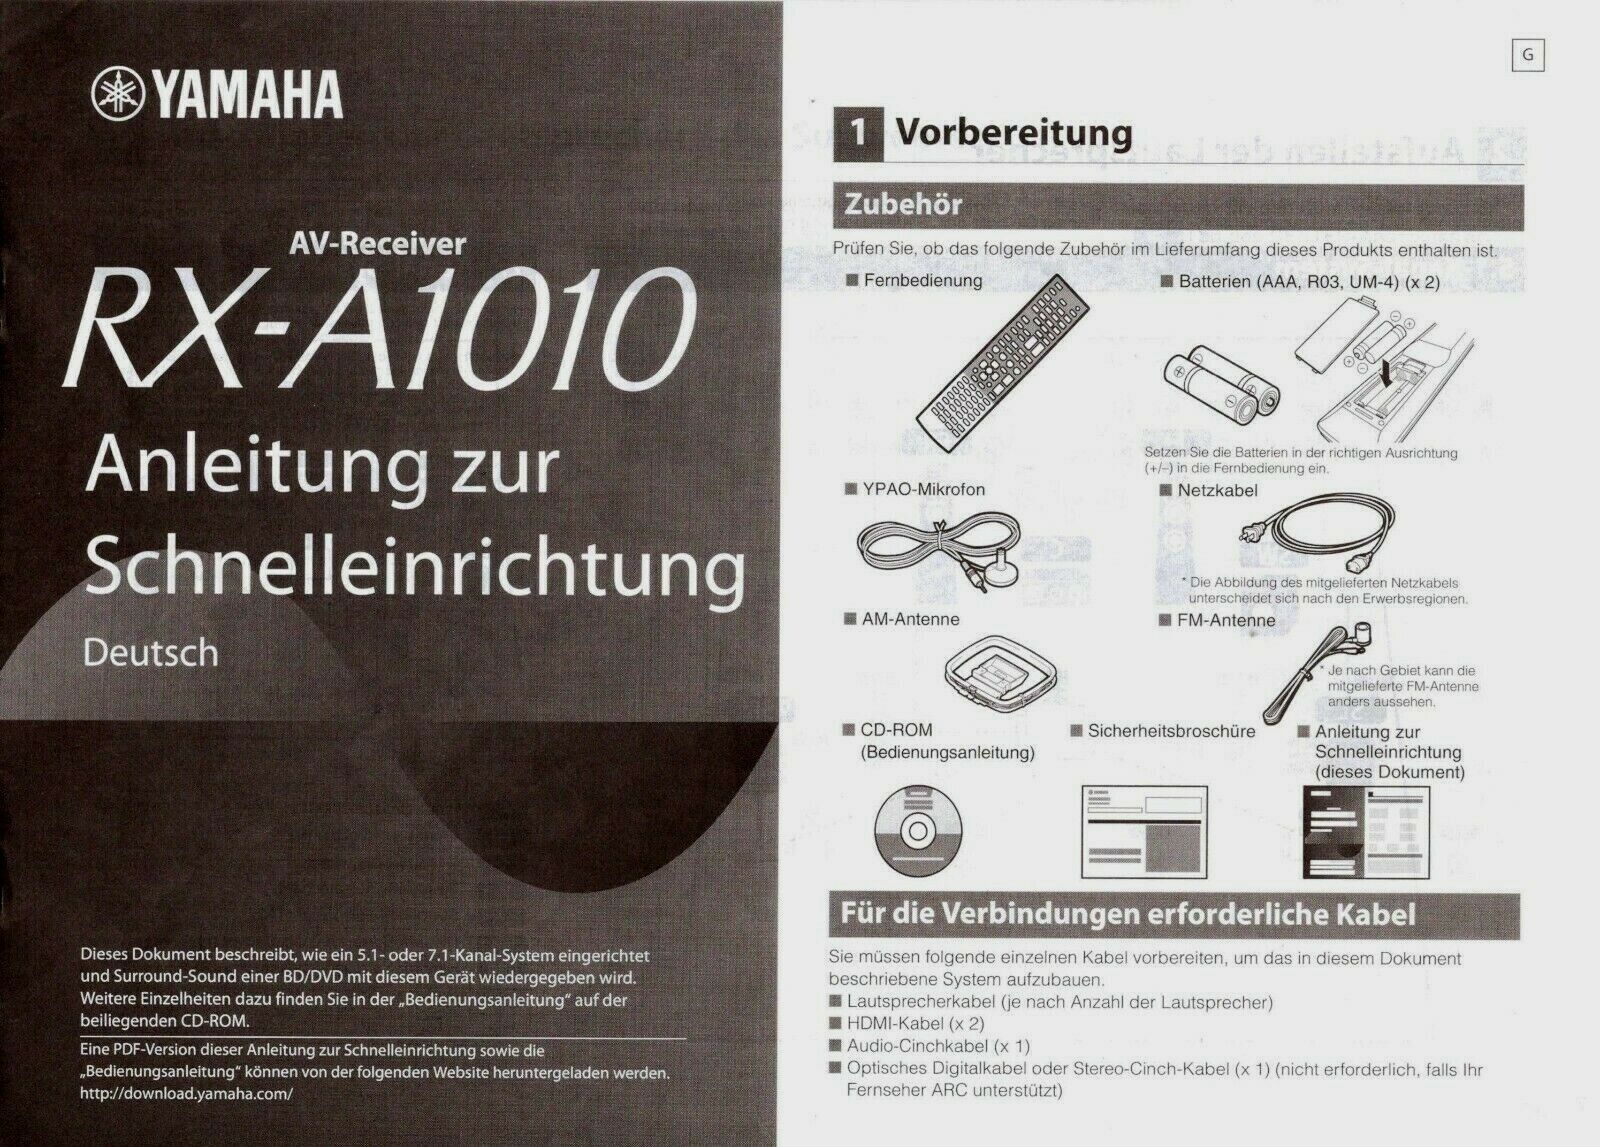 Instrukcja obsługi # Yamaha # AV Receiver # RX-A1010 # 9 Języki # 8 Stron